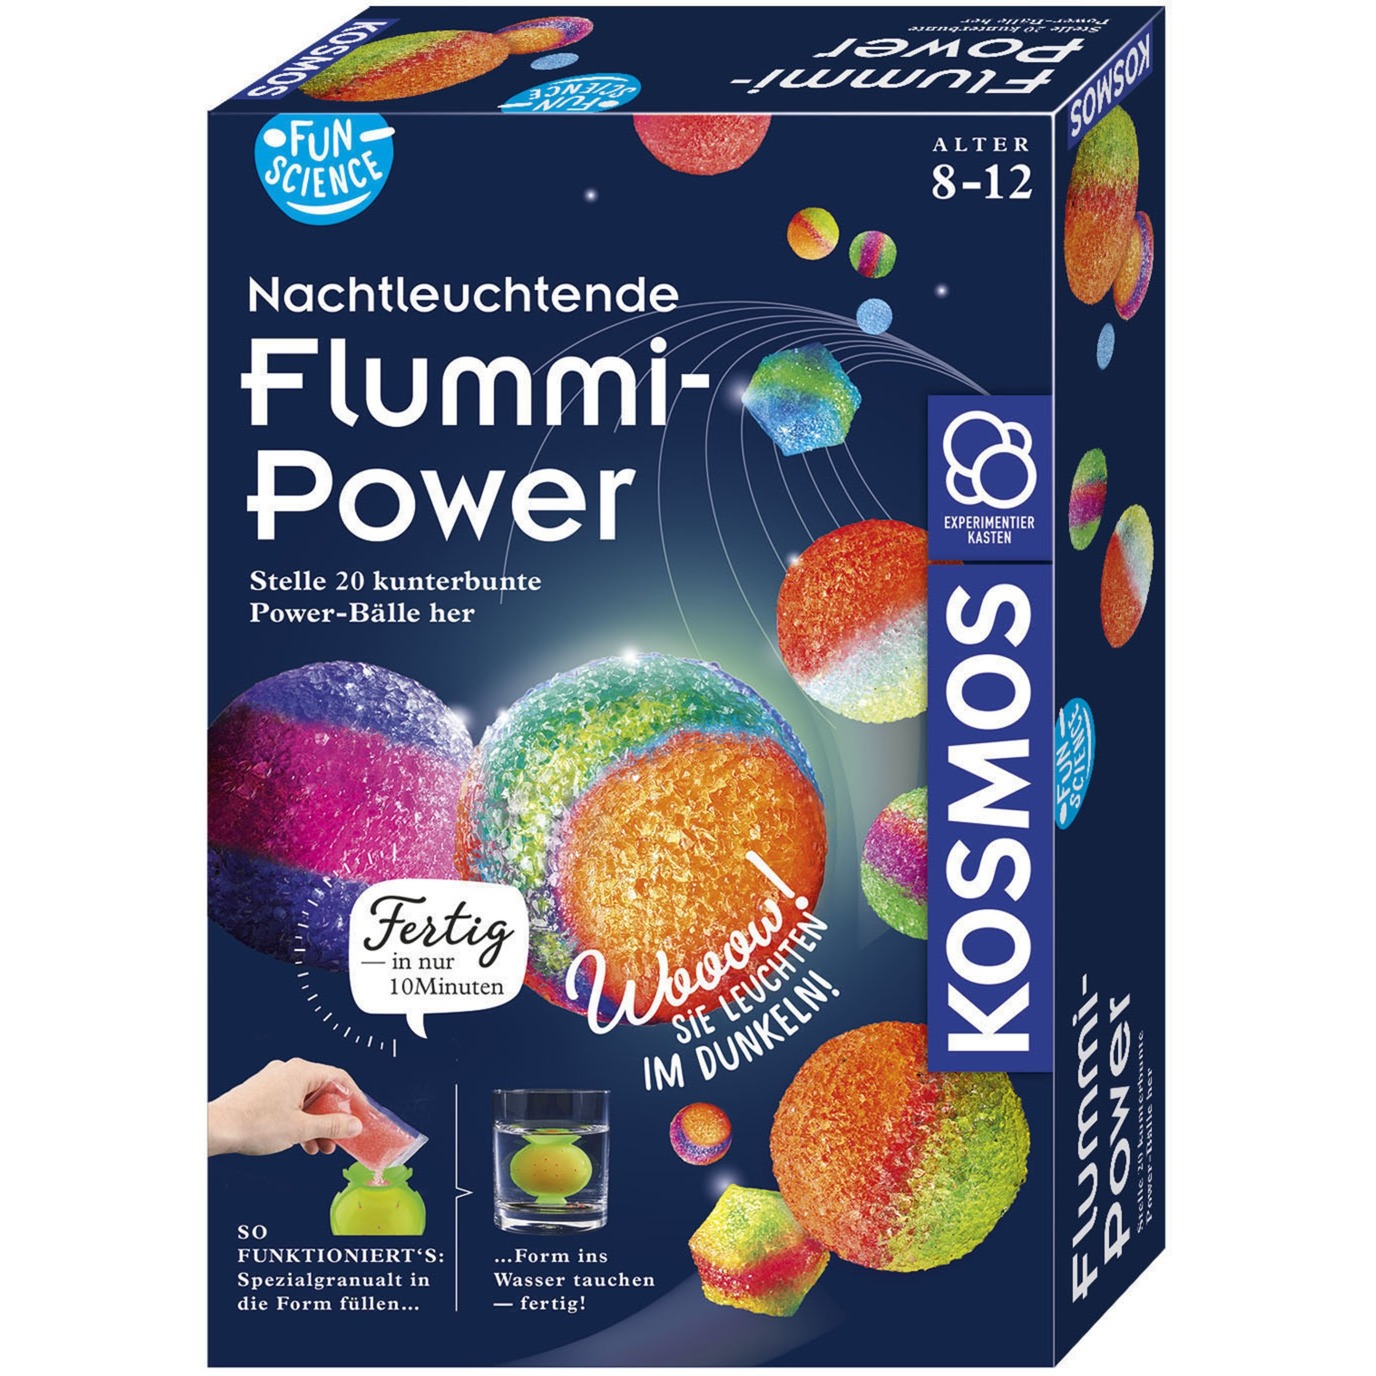 Fun Science Nachtleuchtende Flummi-Power, Experimentierkasten von Kosmos